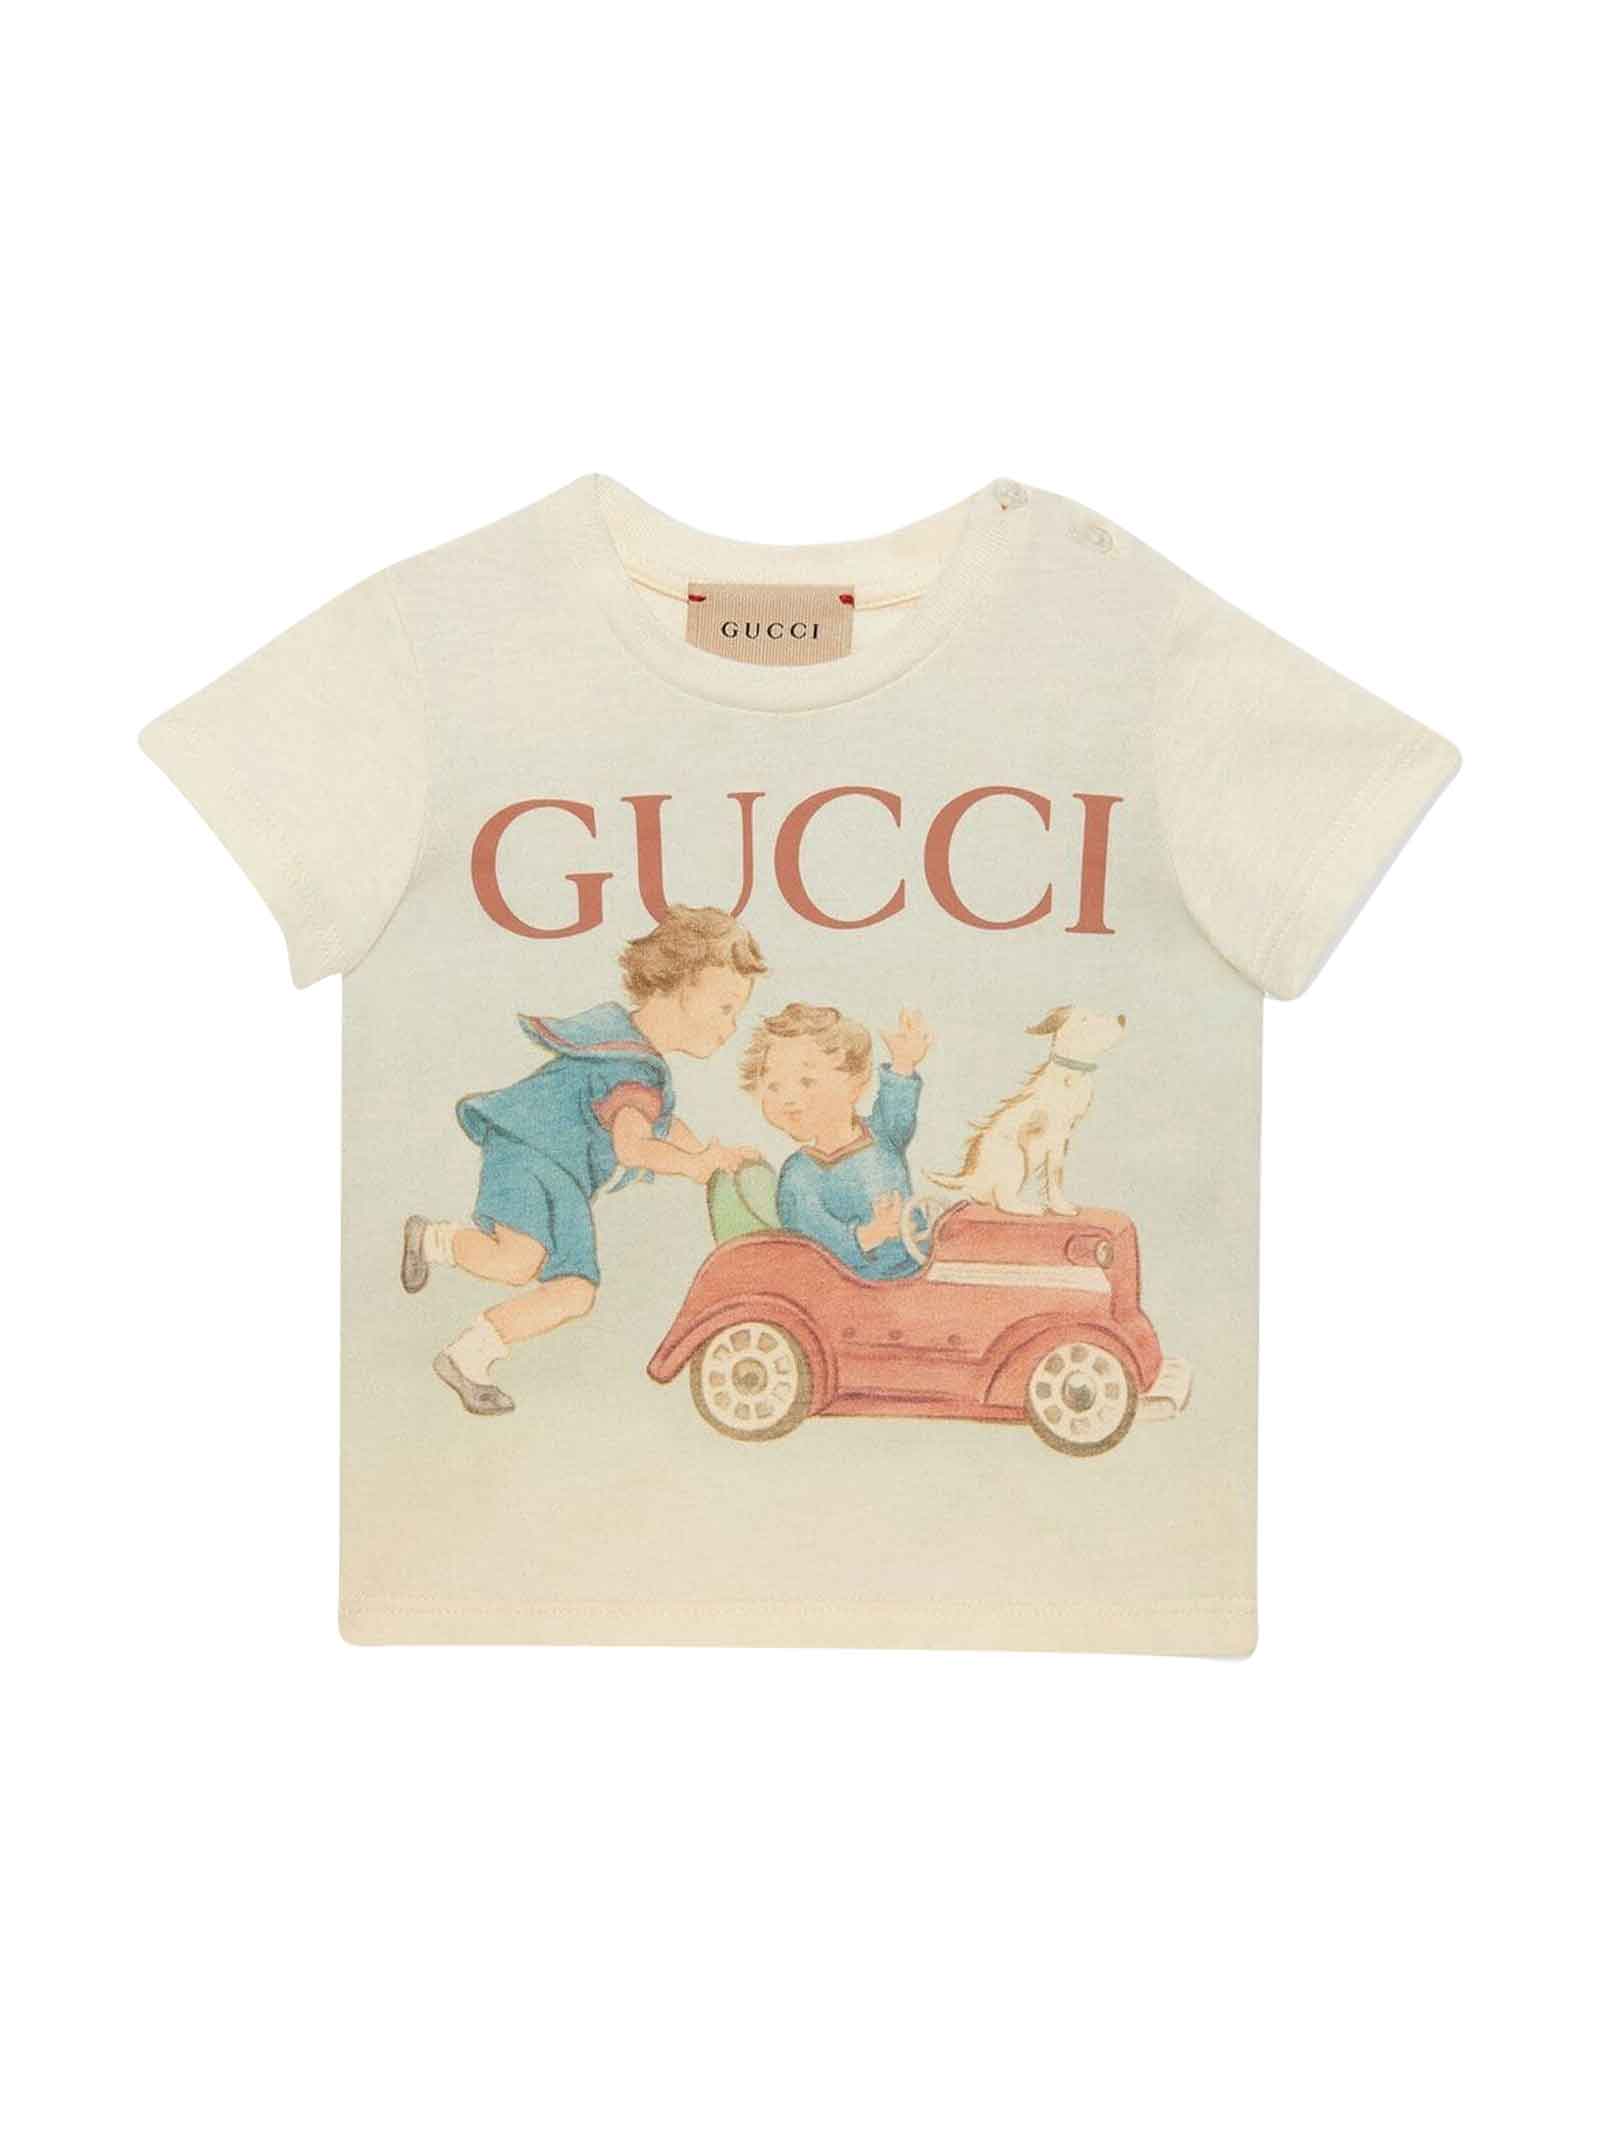 Gucci Beige T-shirt Baby Boy